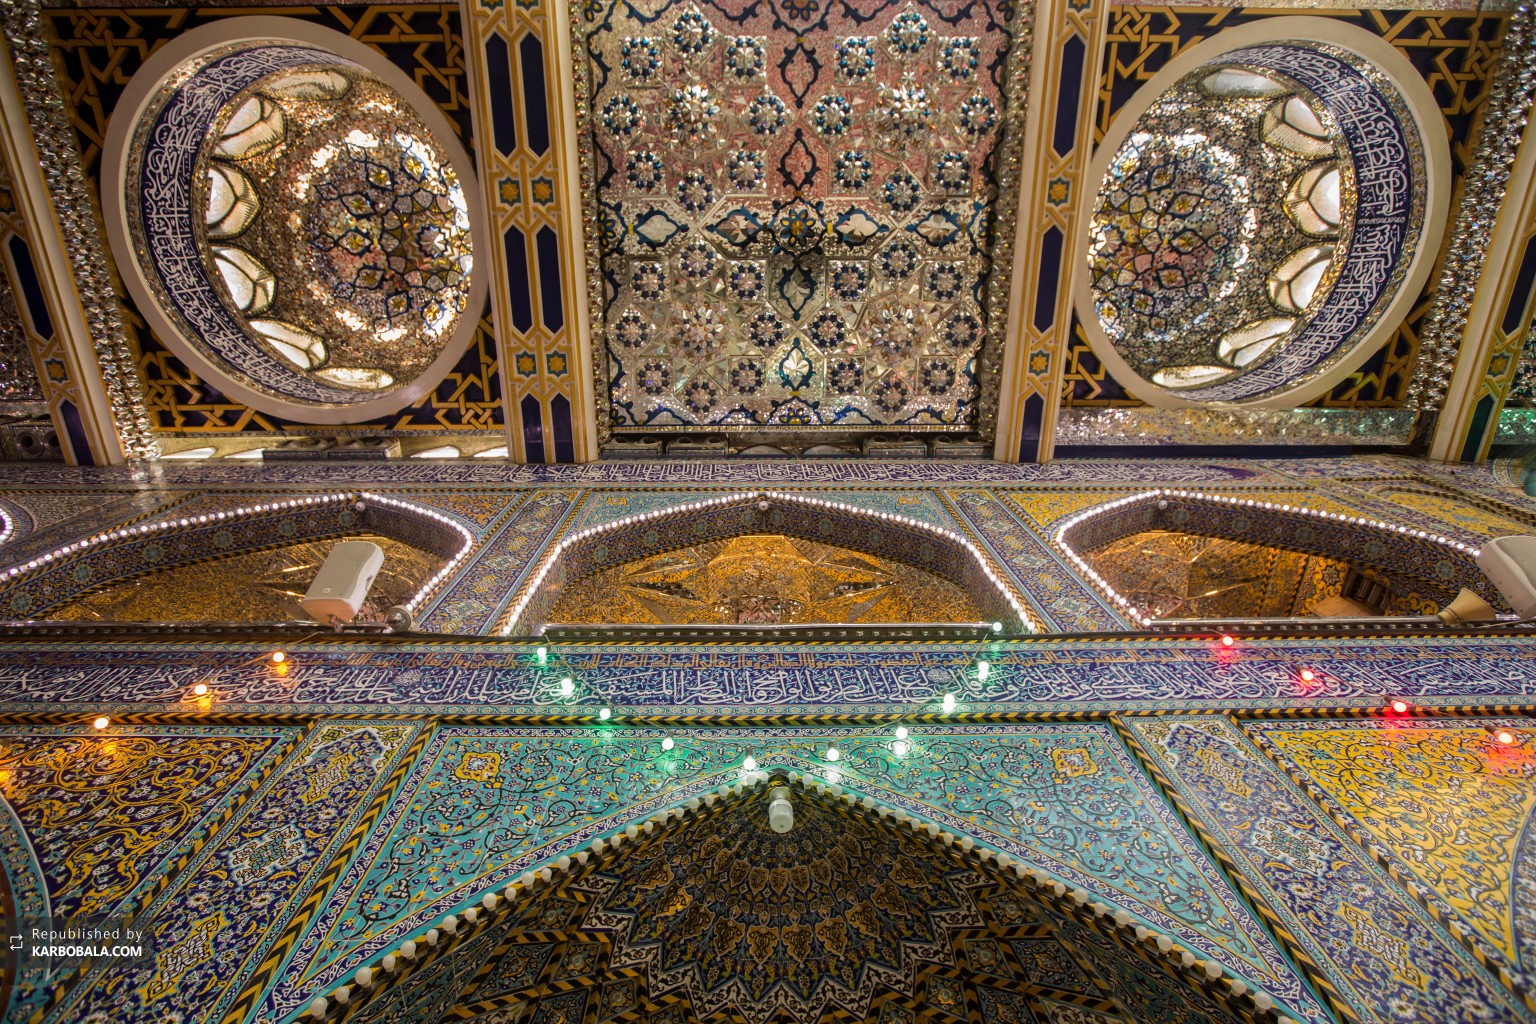 نمایش کاشیکاری و نقوش اسلامی در طراحی هنرمندانه آسمانه بنا